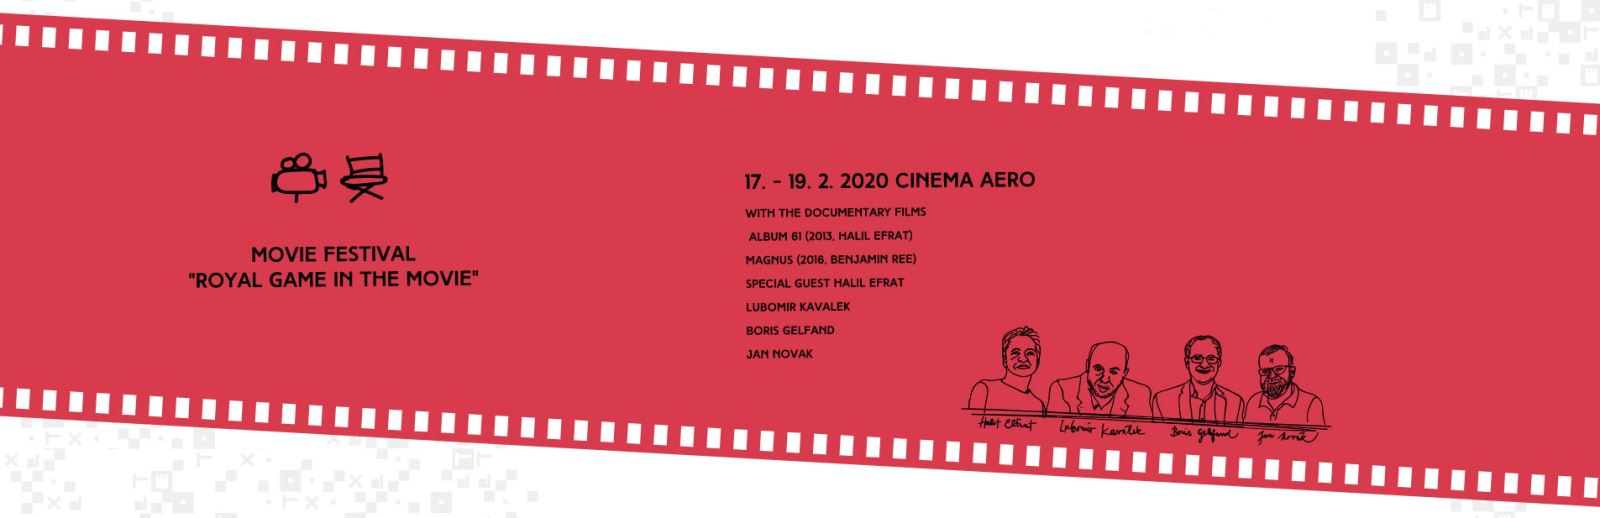 Film festival banner